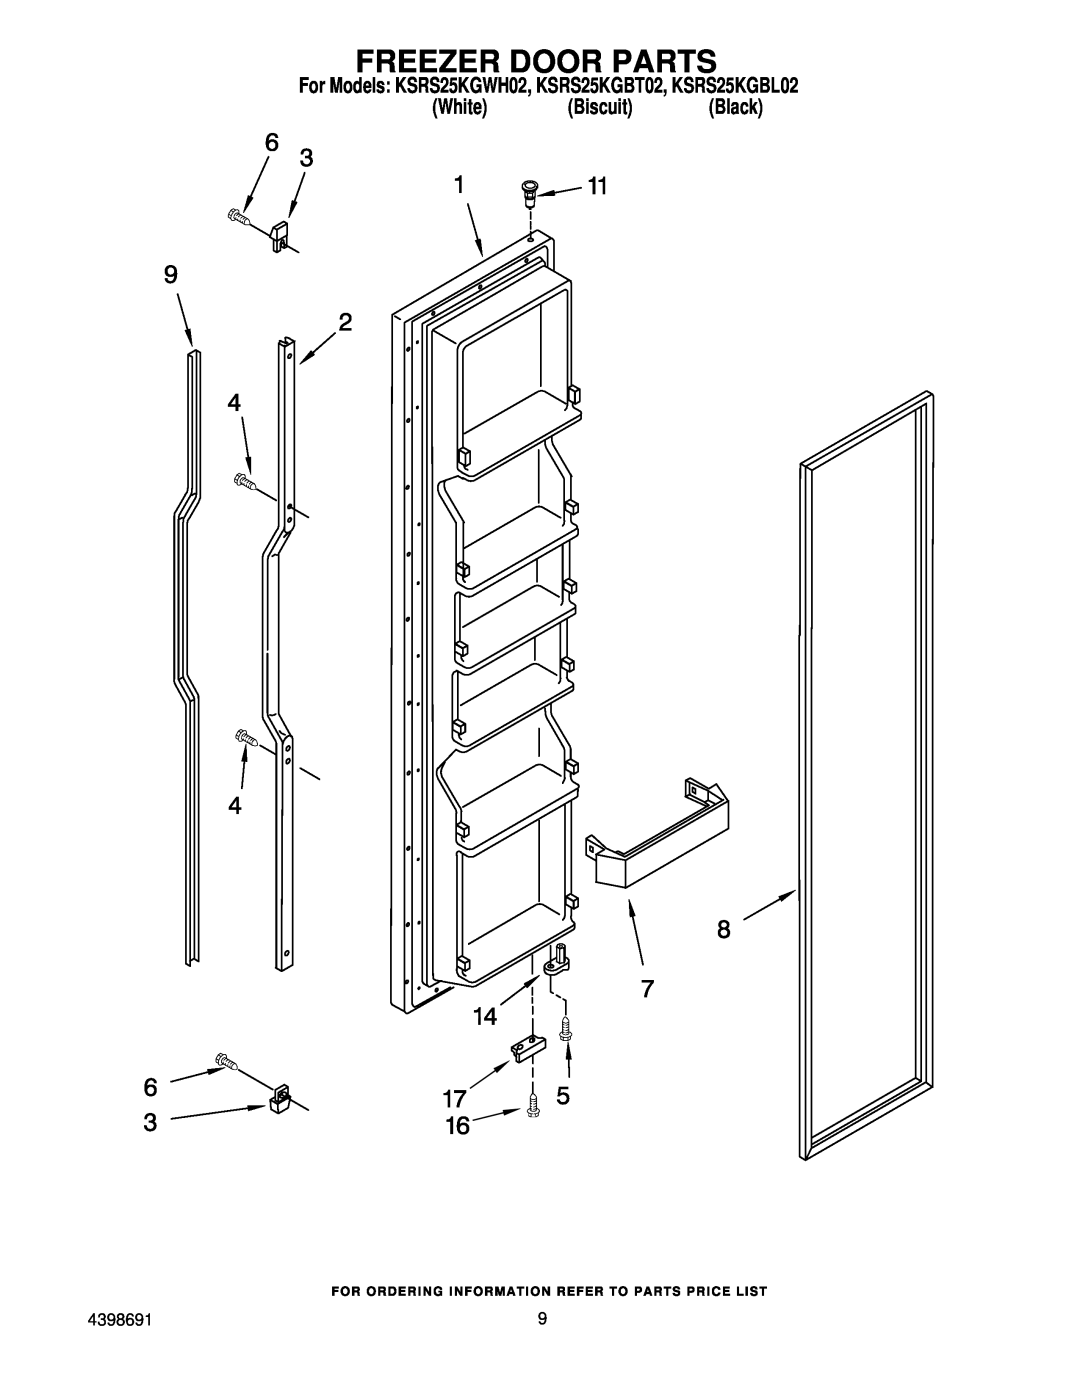 KitchenAid manual Freezer Door Parts, For Models KSRS25KGWH02, KSRS25KGBT02, KSRS25KGBL02, White Biscuit Black 